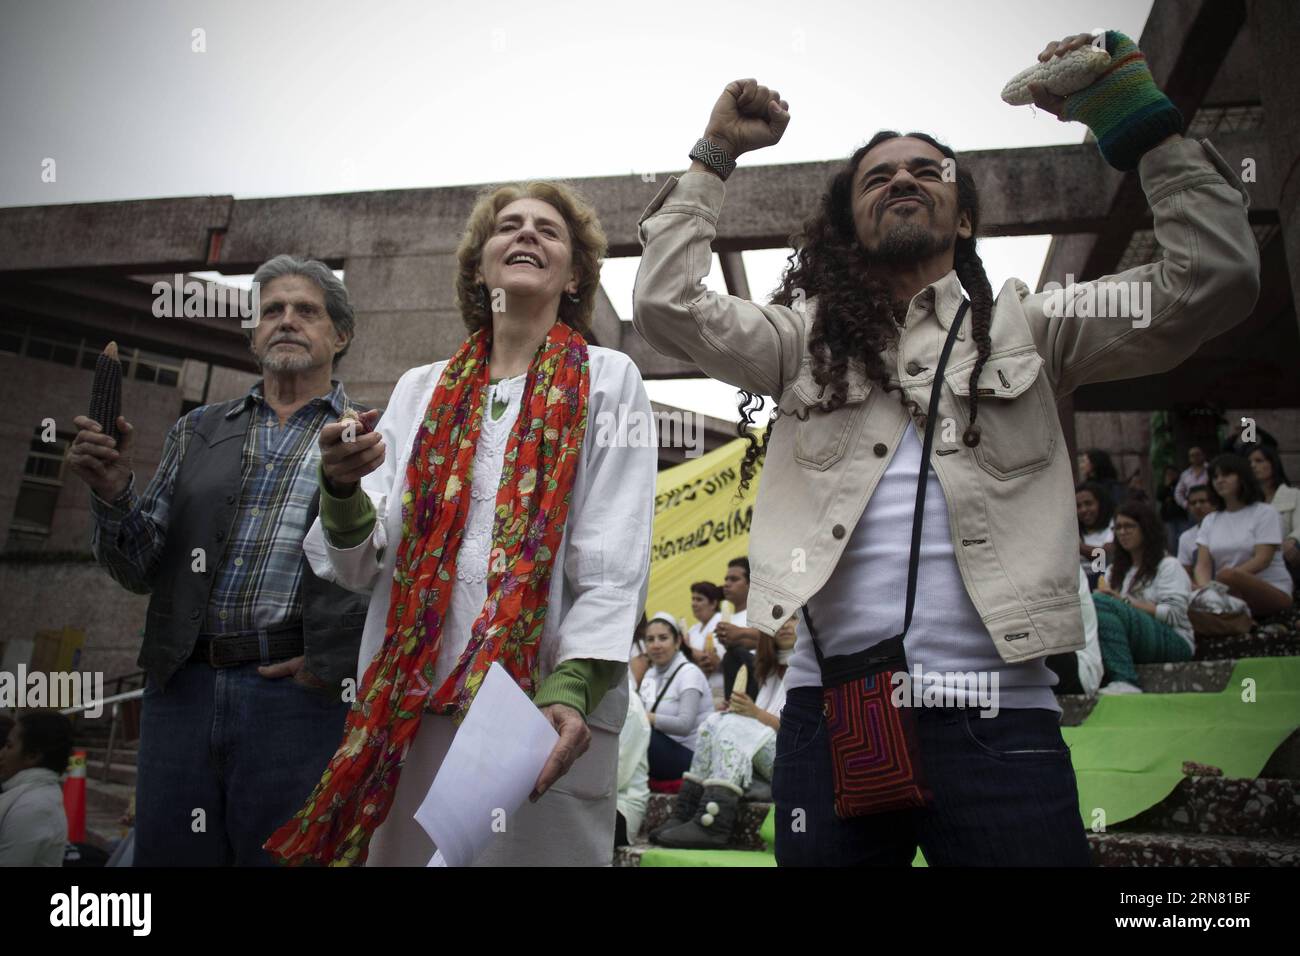 (150929) -- MEXIKO-STADT, 29. September 2015 -- die Schauspieler Hector Bonilla (L), Julieta Egurrola (C) und Ruben Albarran, Sänger der Rockband Cafe Tacvba, nehmen am 29. September 2015 am National Corn Day vor dem Büro des Council of the Federal Judiciary in Mexiko-Stadt, der Hauptstadt Mexikos, Teil. Laut der lokalen Presse wurde der Protest gegen den Einsatz von transgenem Mais abgehalten. Alejandro Ayala) (rtg) (sp) MEXIKO-MEXIKO CITY-SOCIETY-CORN DAY e AlejandroxAyala PUBLICATIONxNOTxINxCHN Mexico City Sept 29 2015 Schauspieler Hector Bonilla l Julieta EGURROLA C und Ruben Singer of Stockfoto